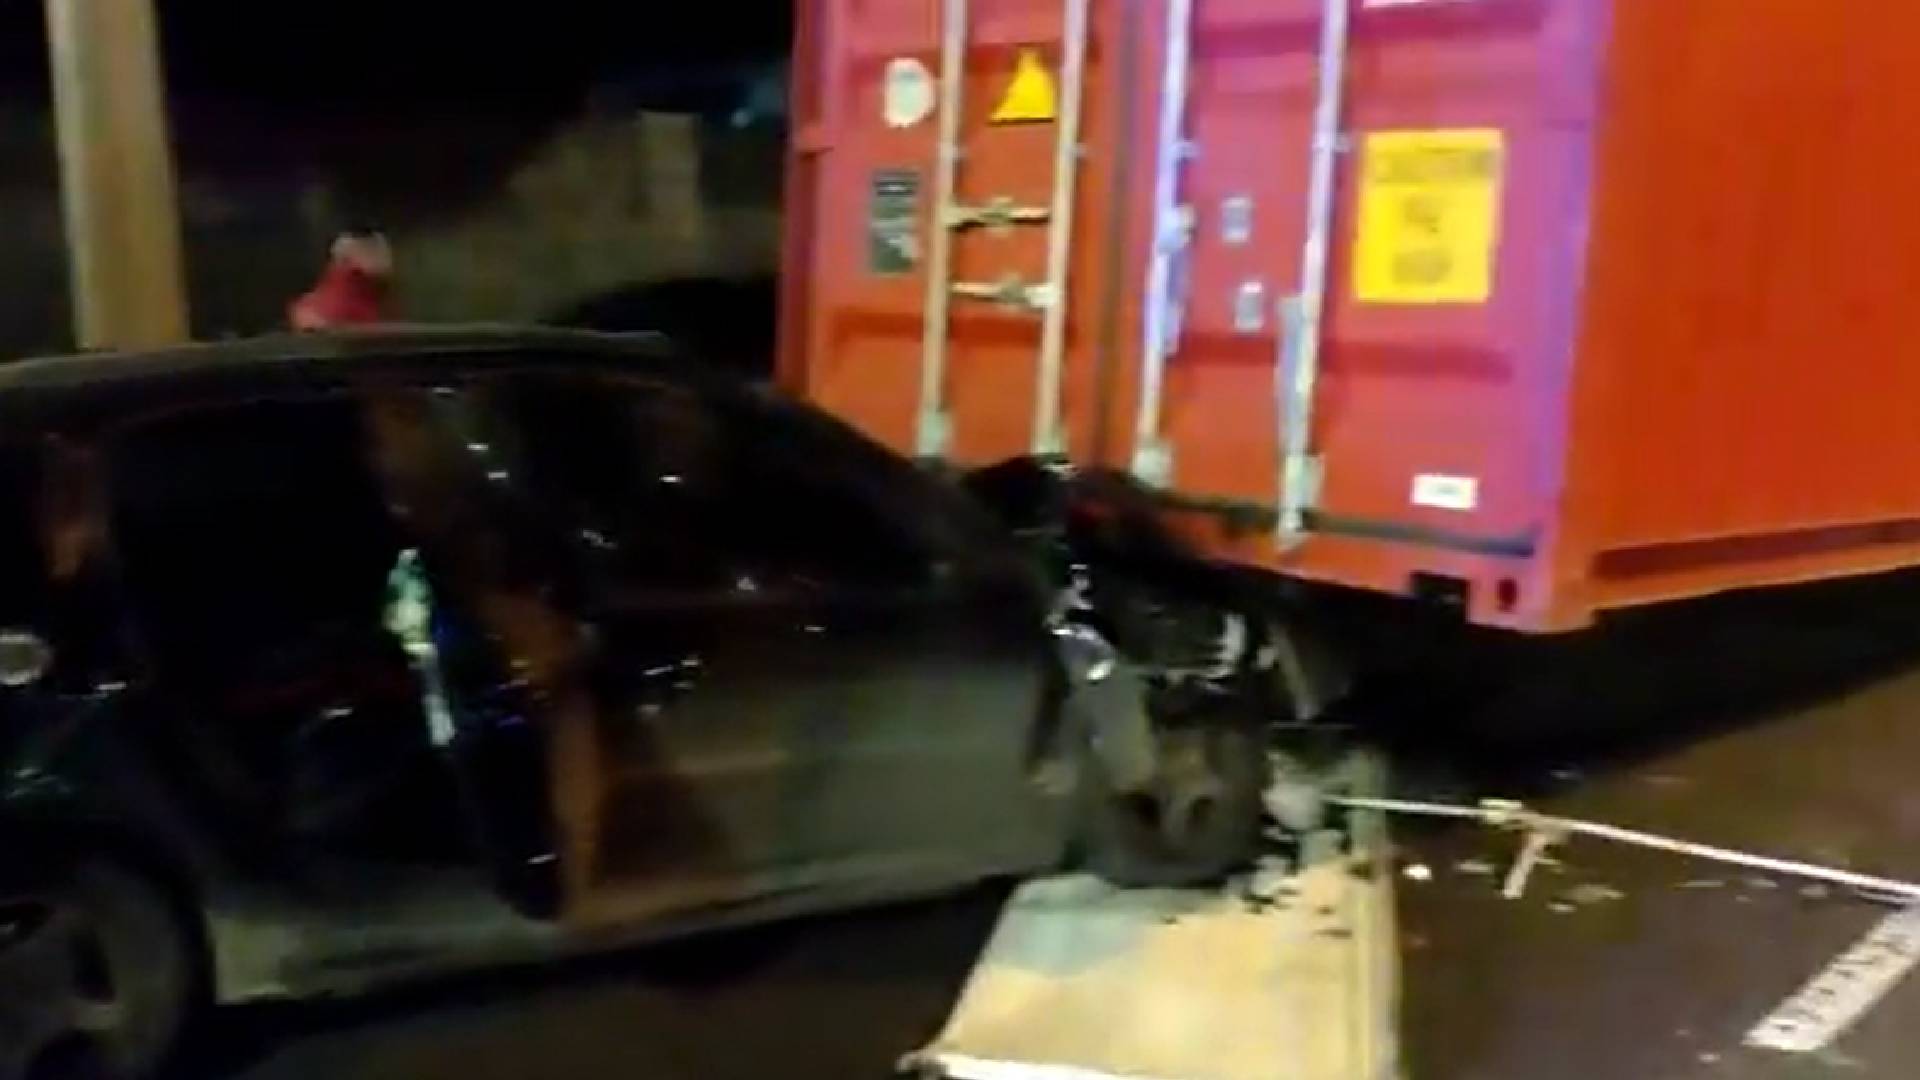 Al desprenderse, el container aplastó la parte delantera de un auto